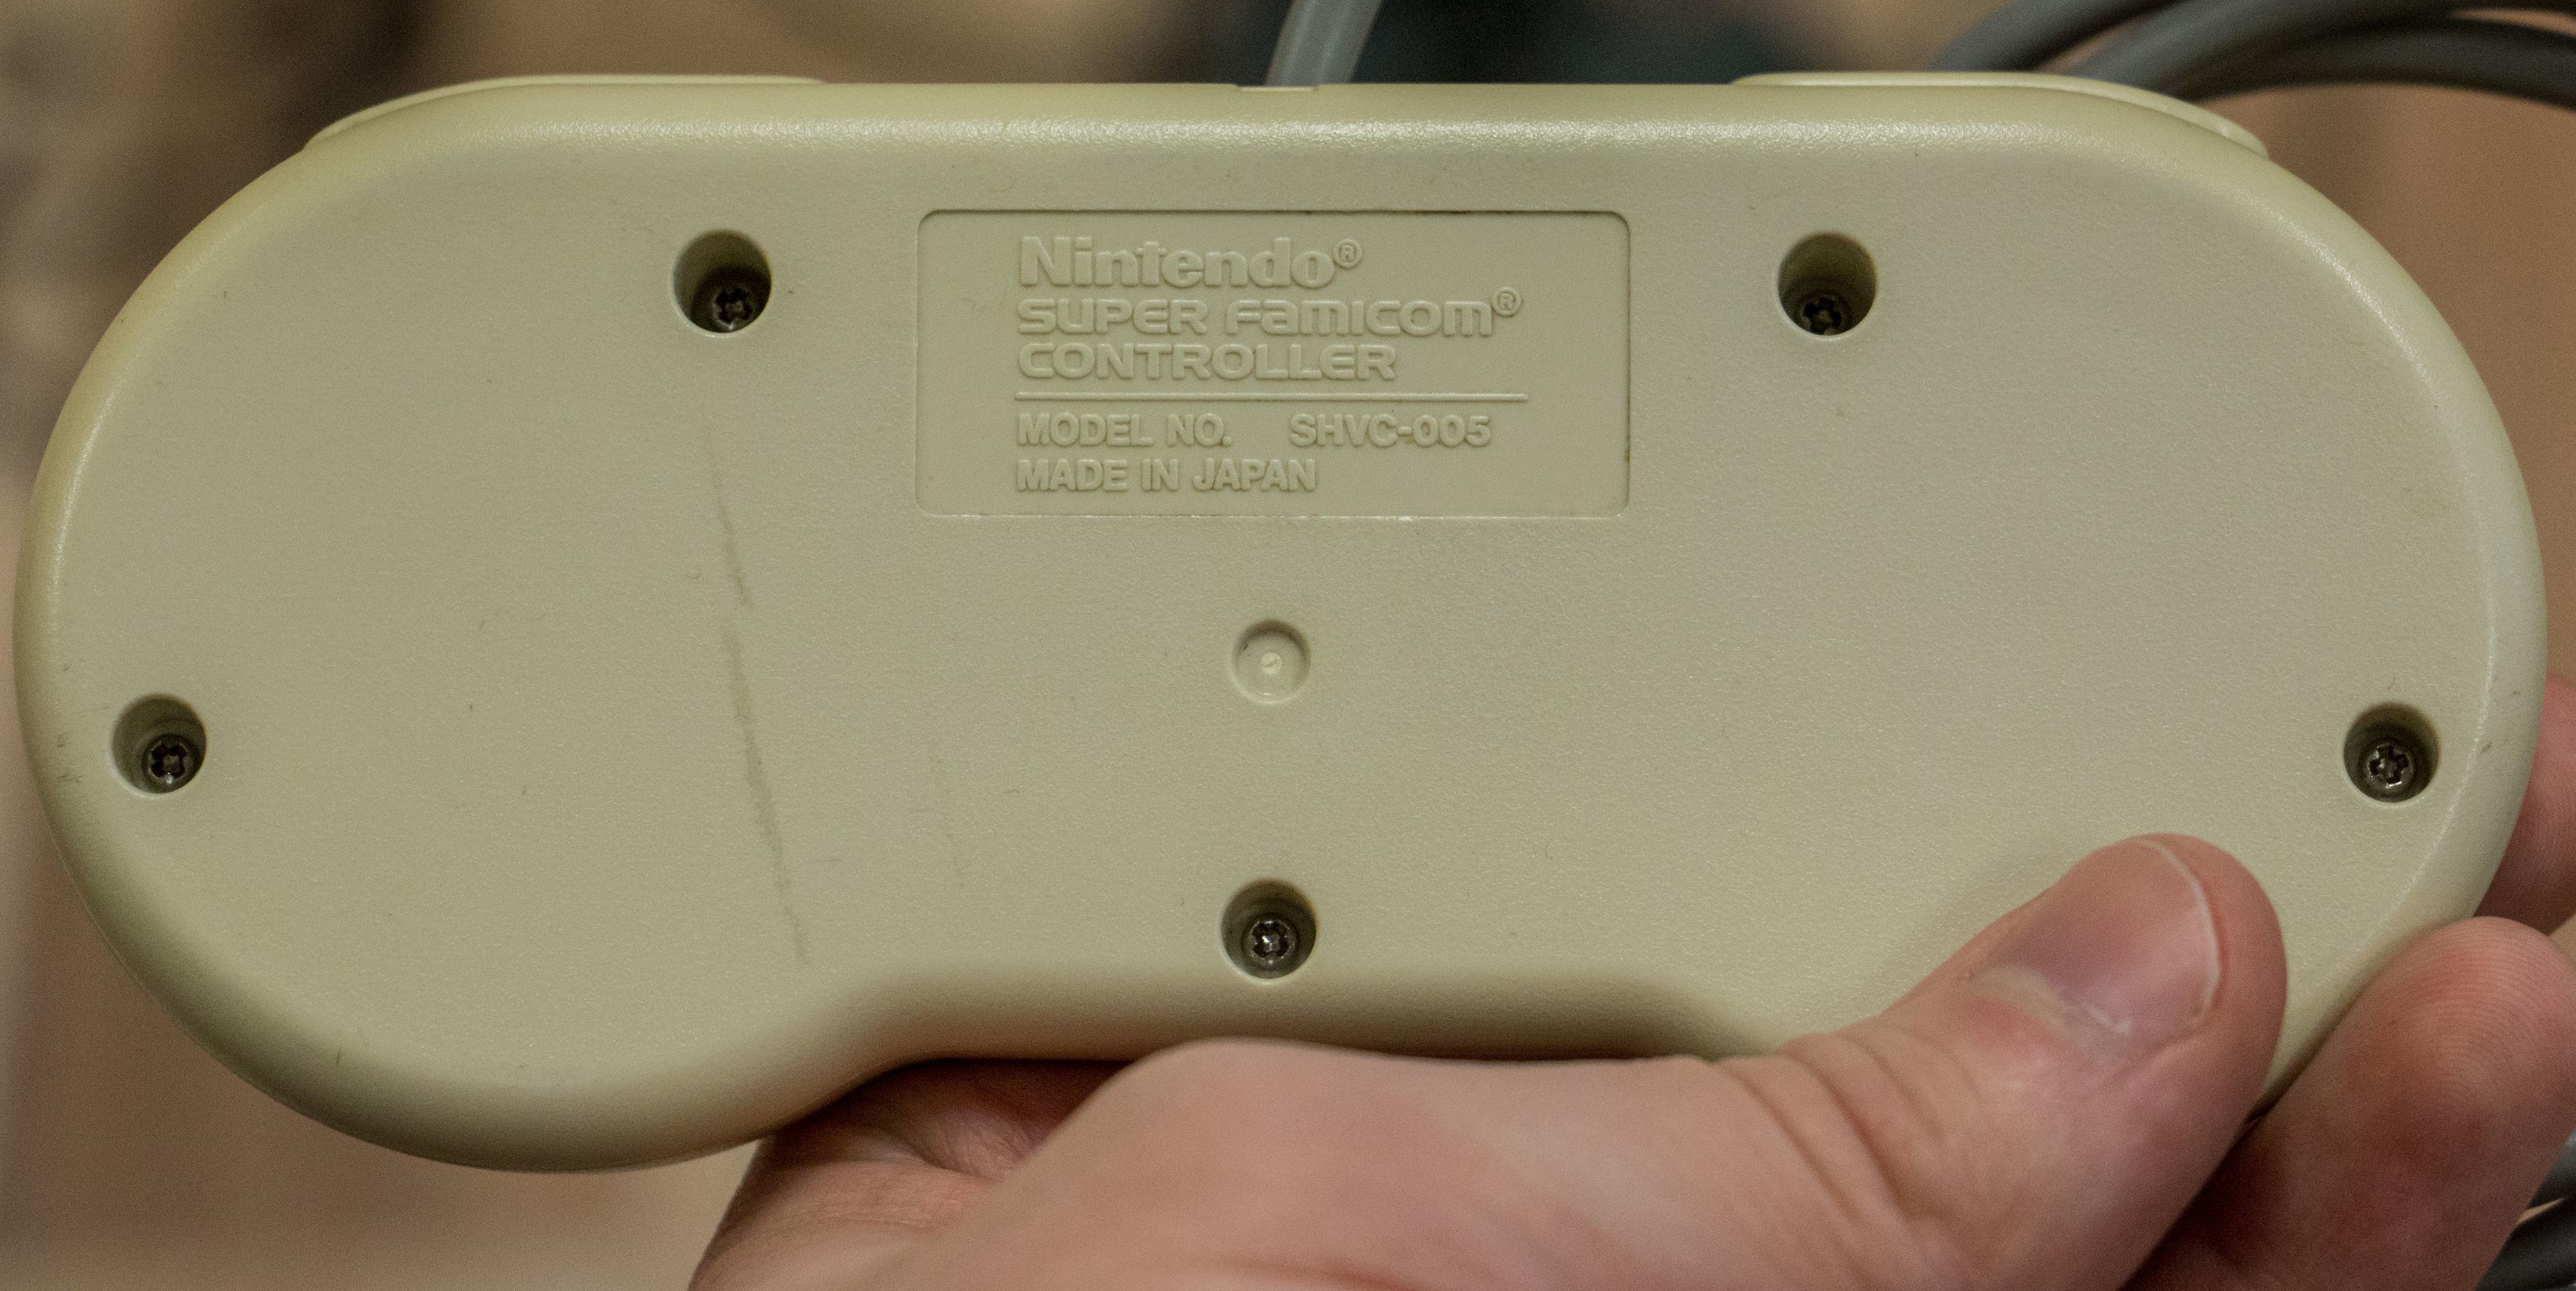 På baksiden står det fortsatt Nintendo.